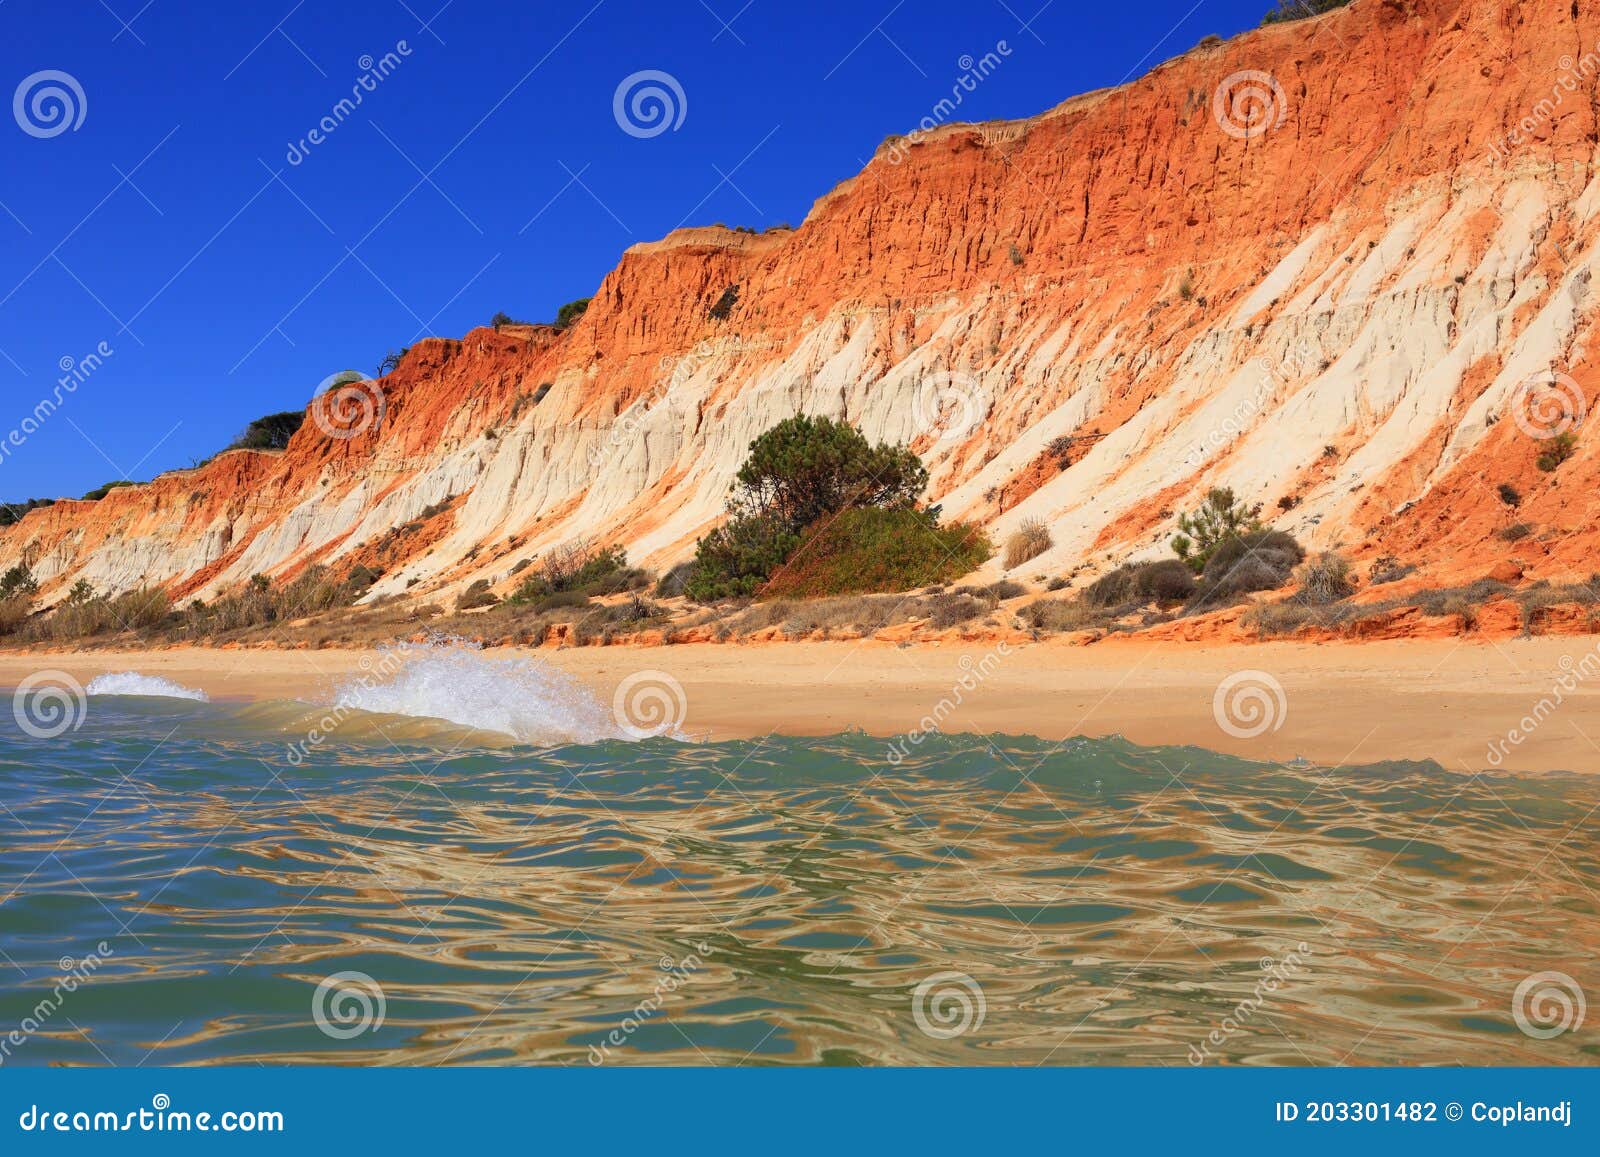 deserted golden sandy beach in olhos de agua, albufeira, algarve, portugal.